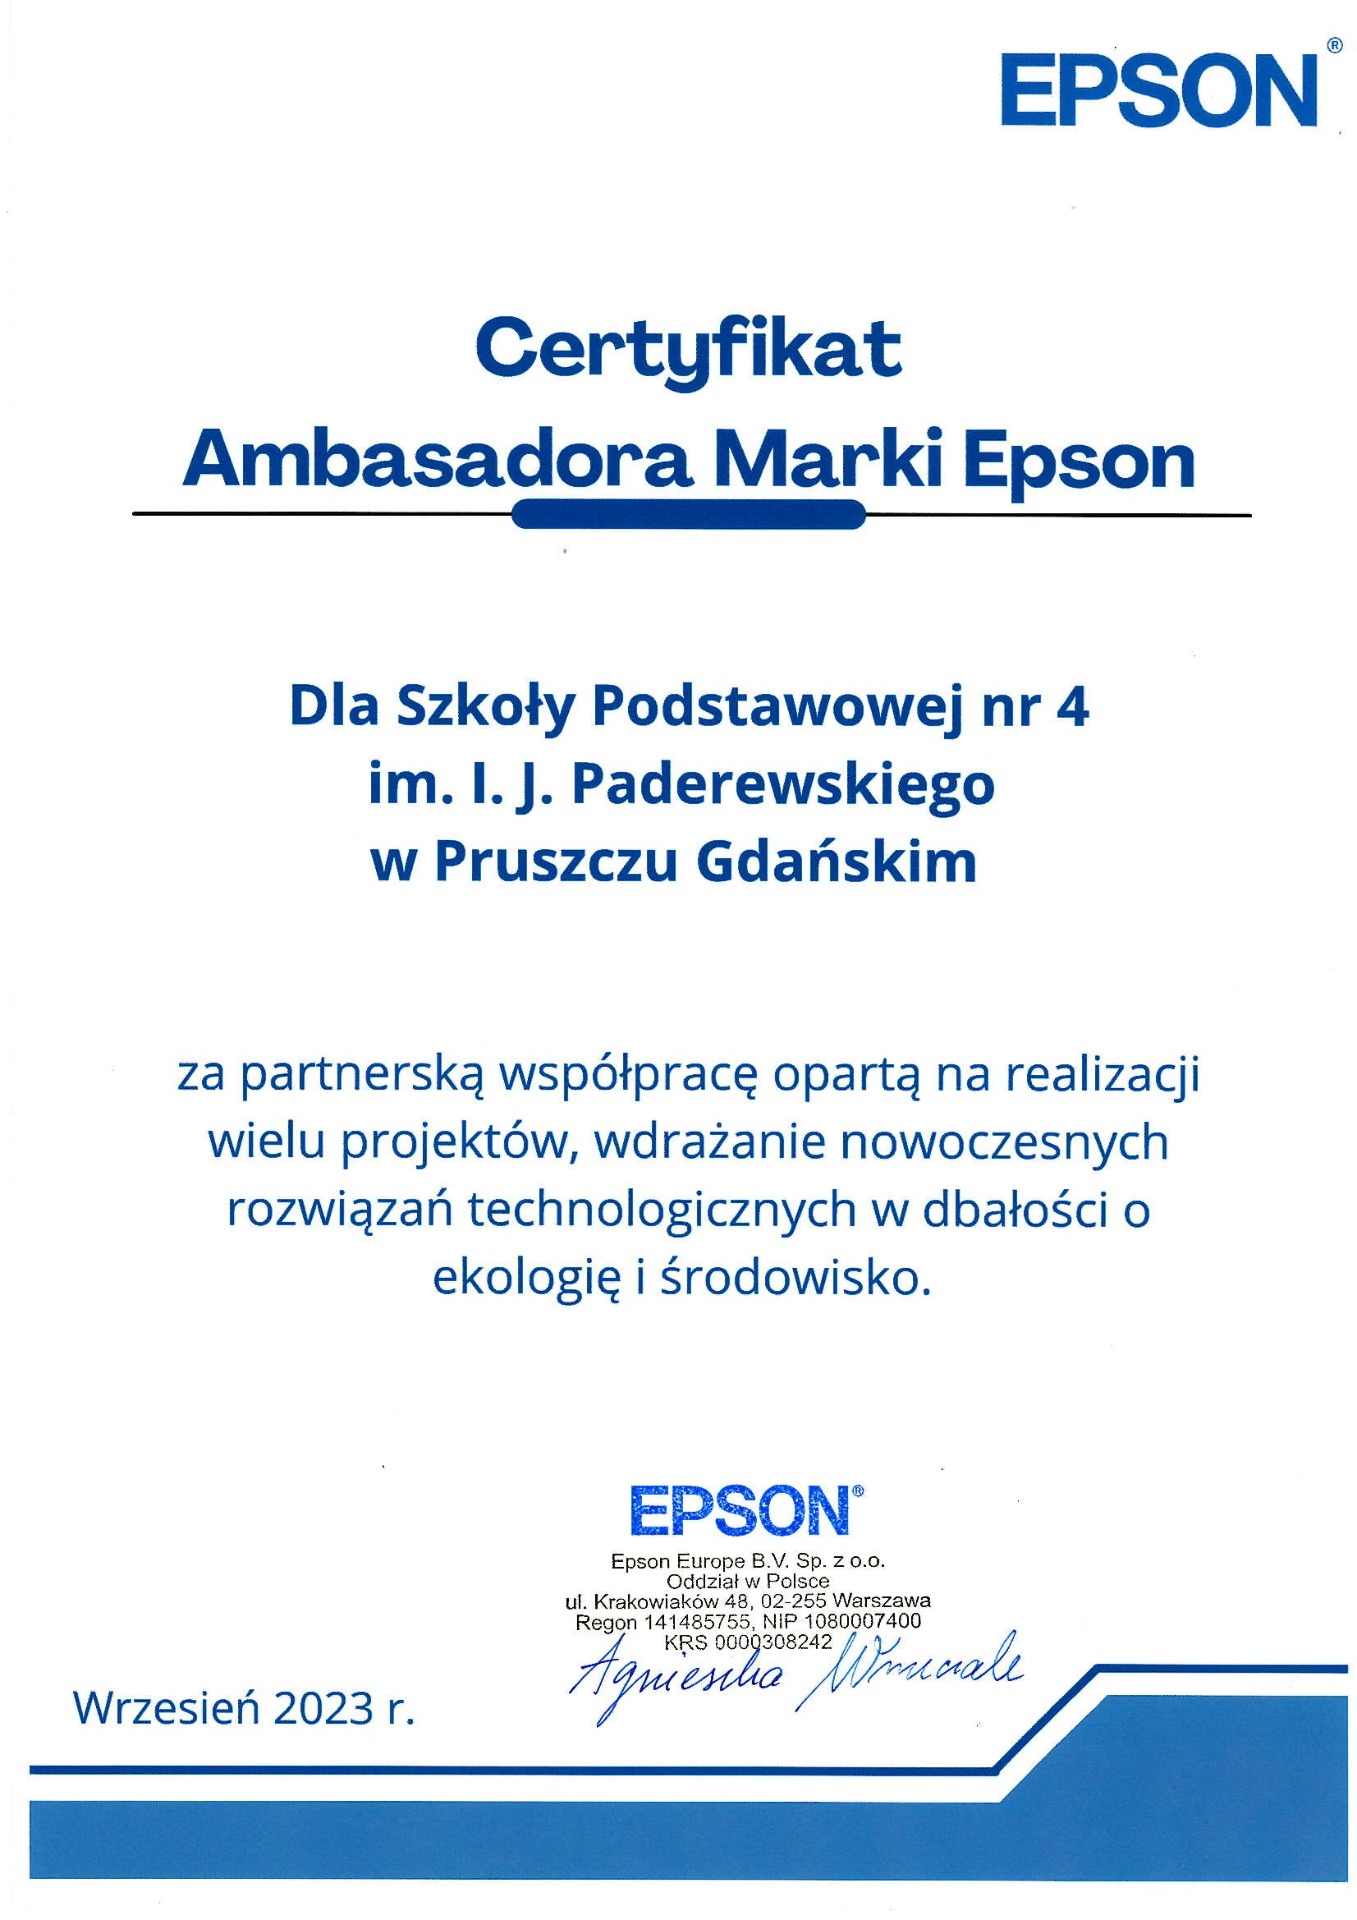 Certyfikat dla SP4 od Epson - Obrazek 1